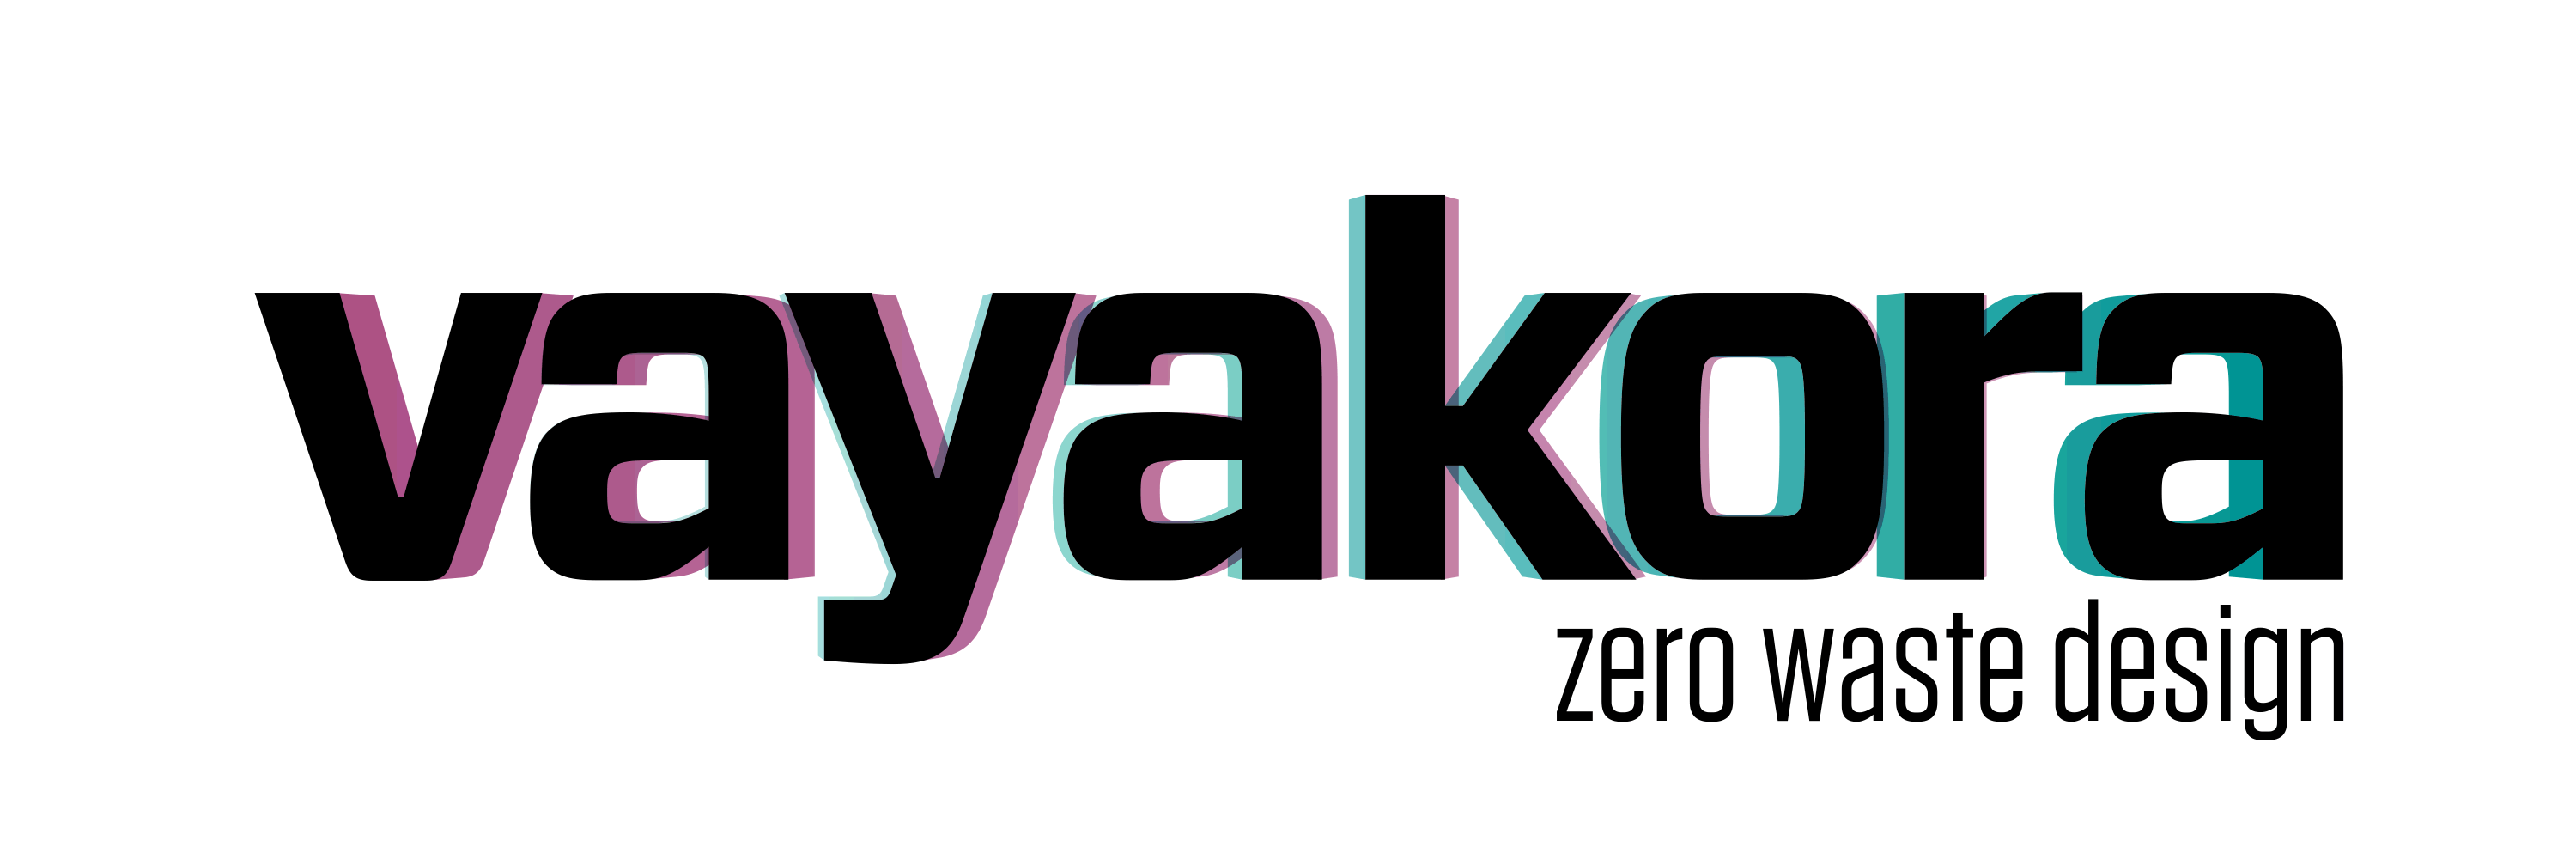 vayakora | zero waste Etsy shop